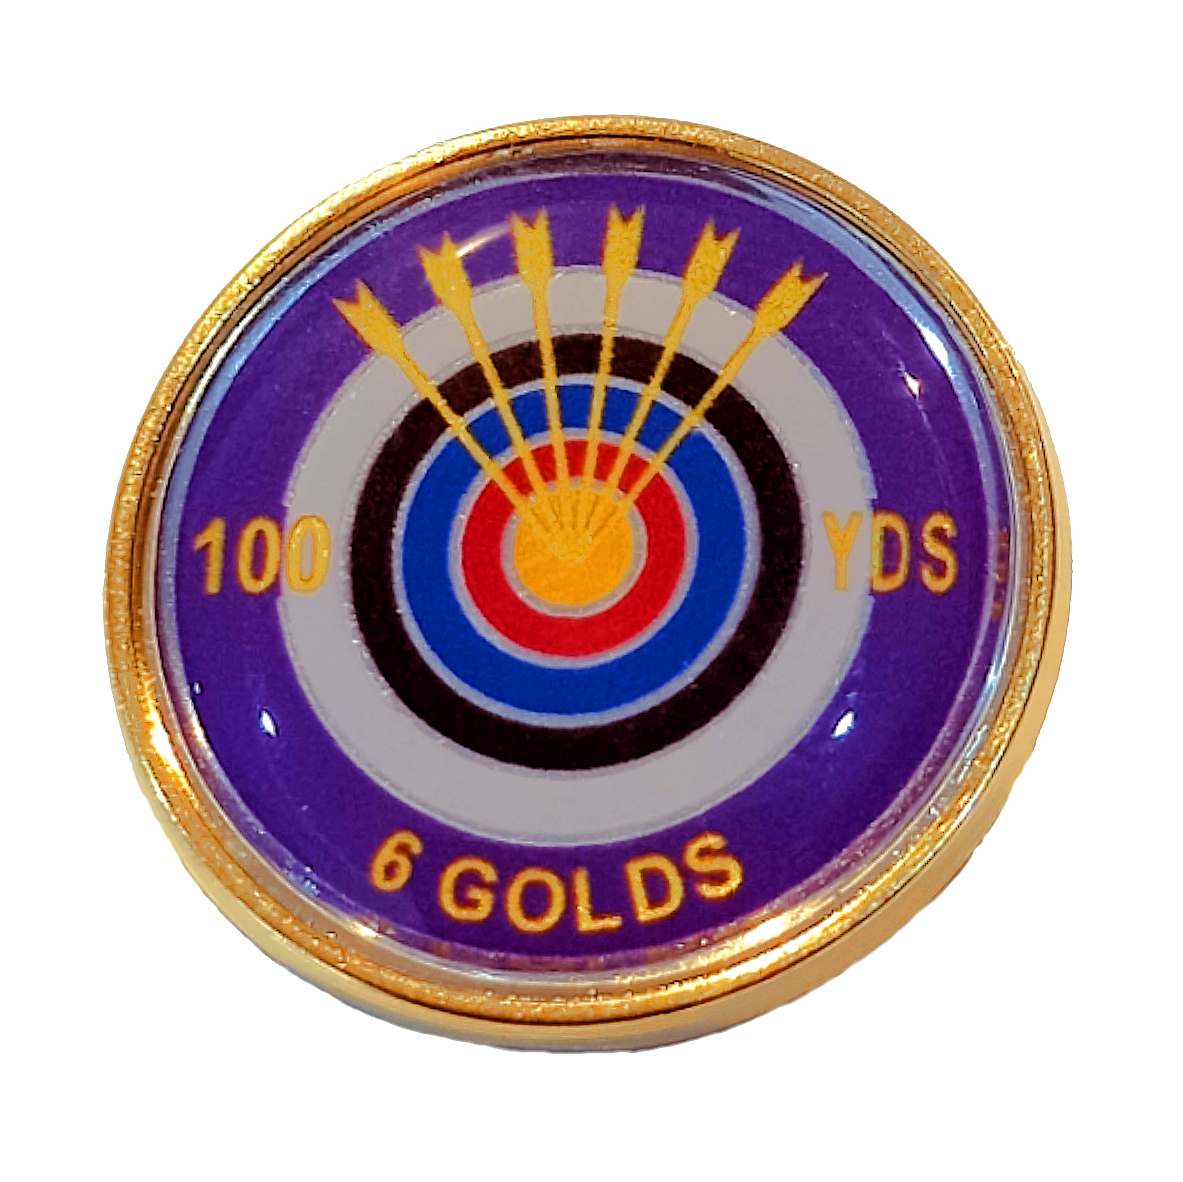 Six Golds premium badge